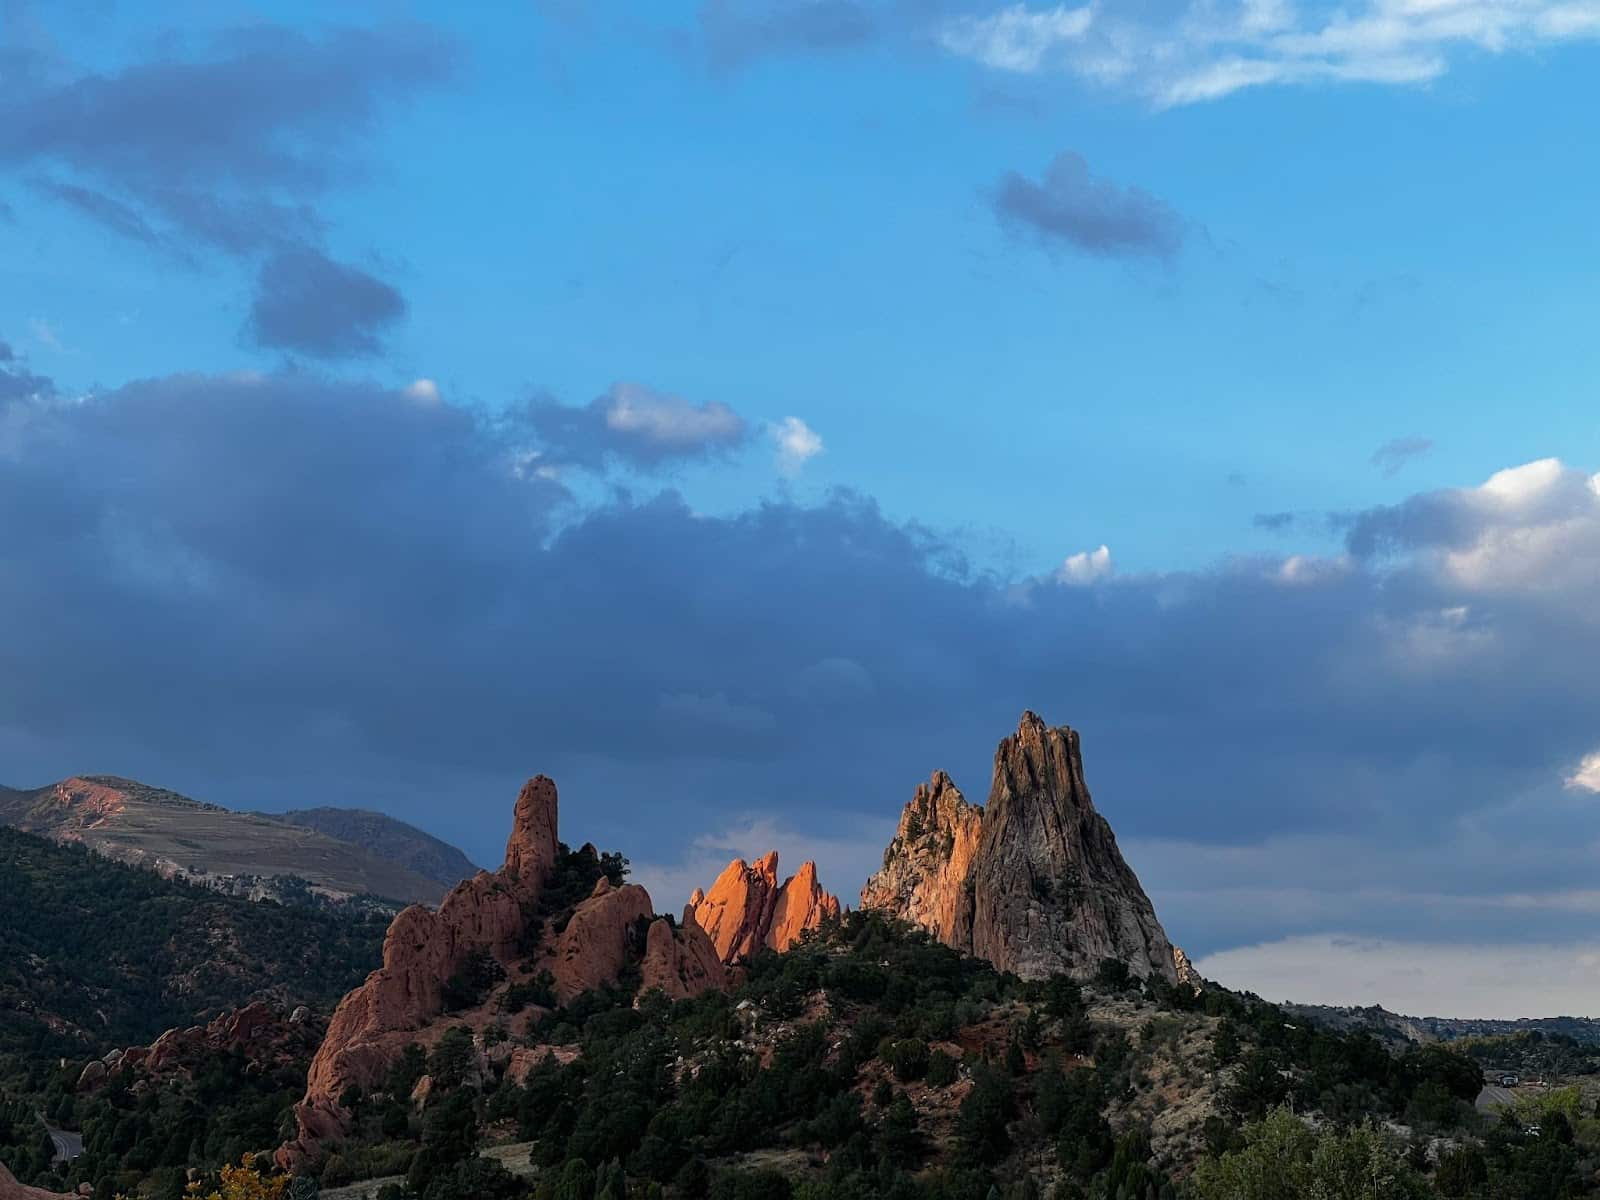 Ein Felsengebirge im Garden of the Gods in Colorado Springs, CO, unter einem blauen, wolkenverhangenen Himmel